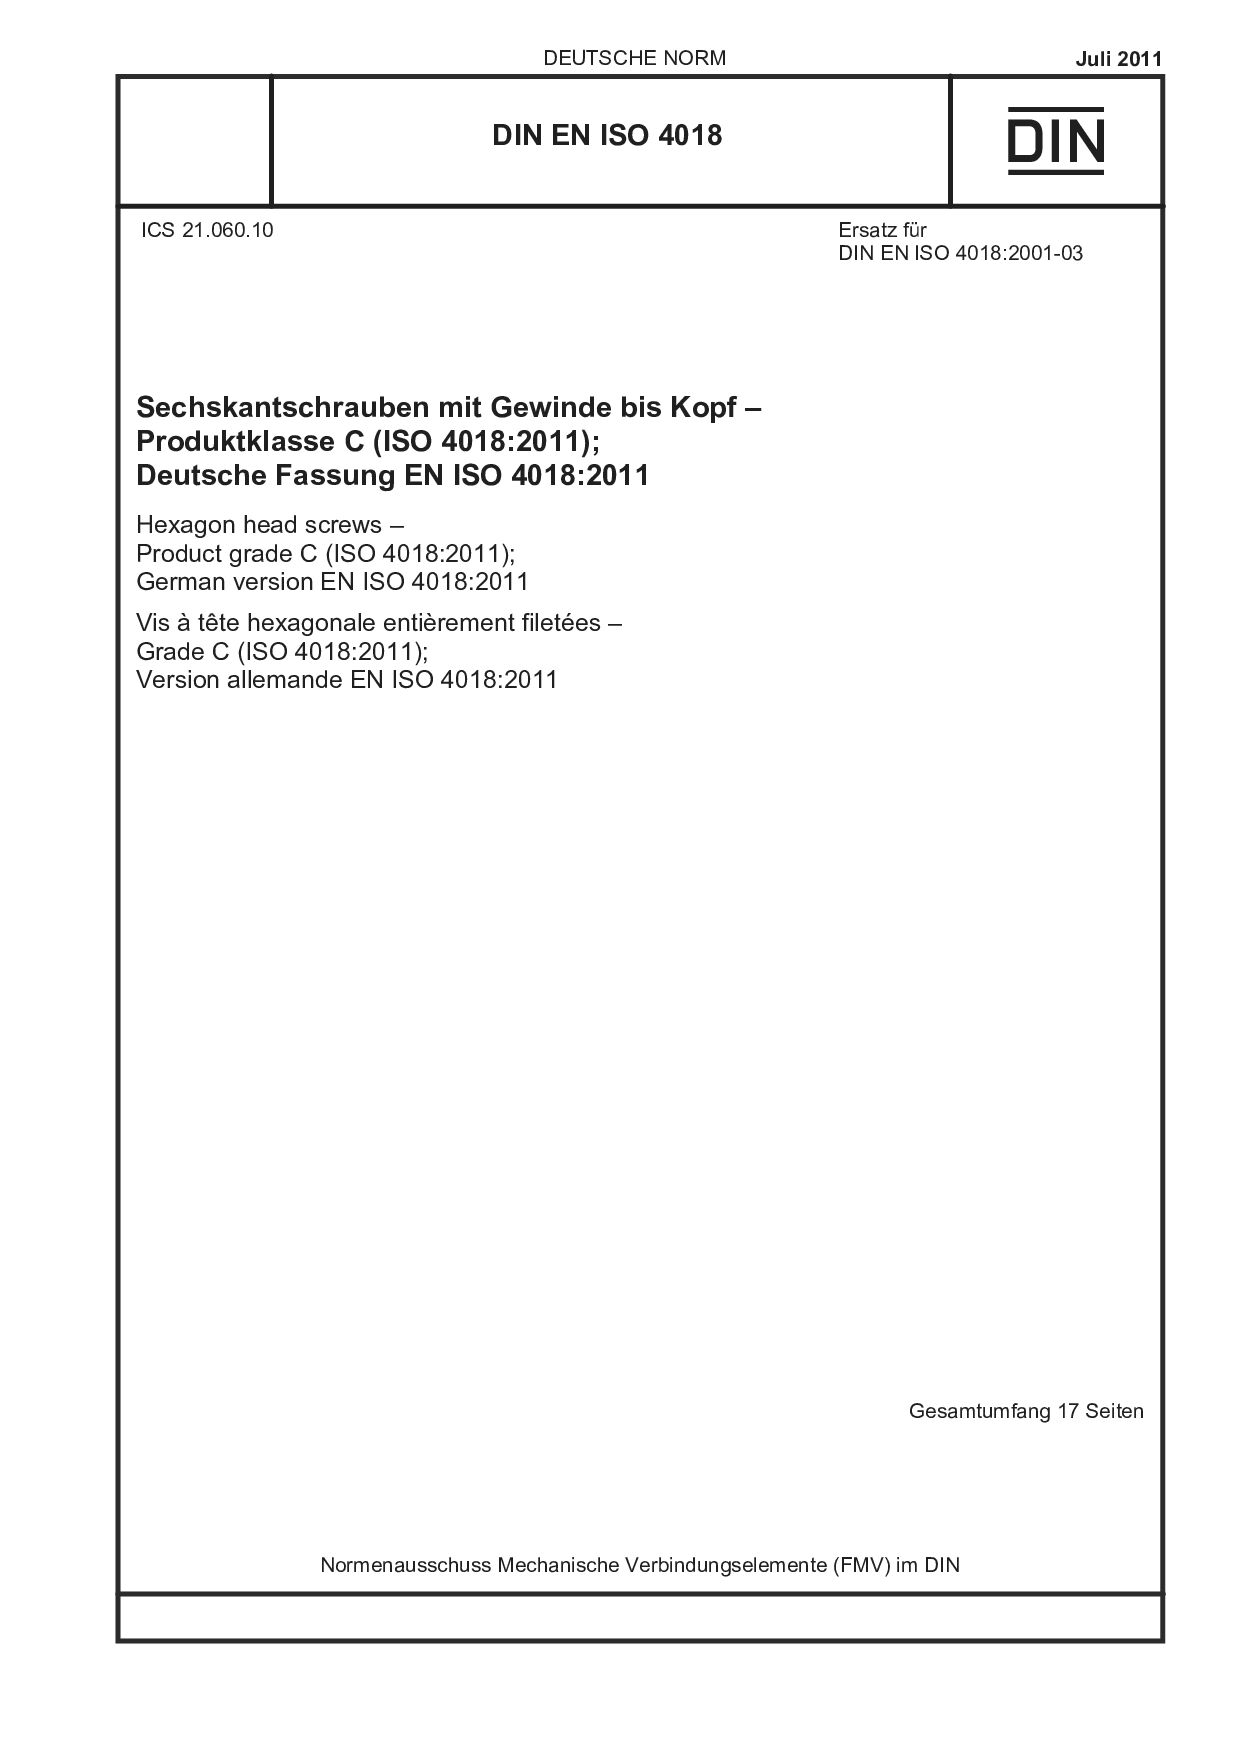 DIN EN ISO 4018:2011封面图